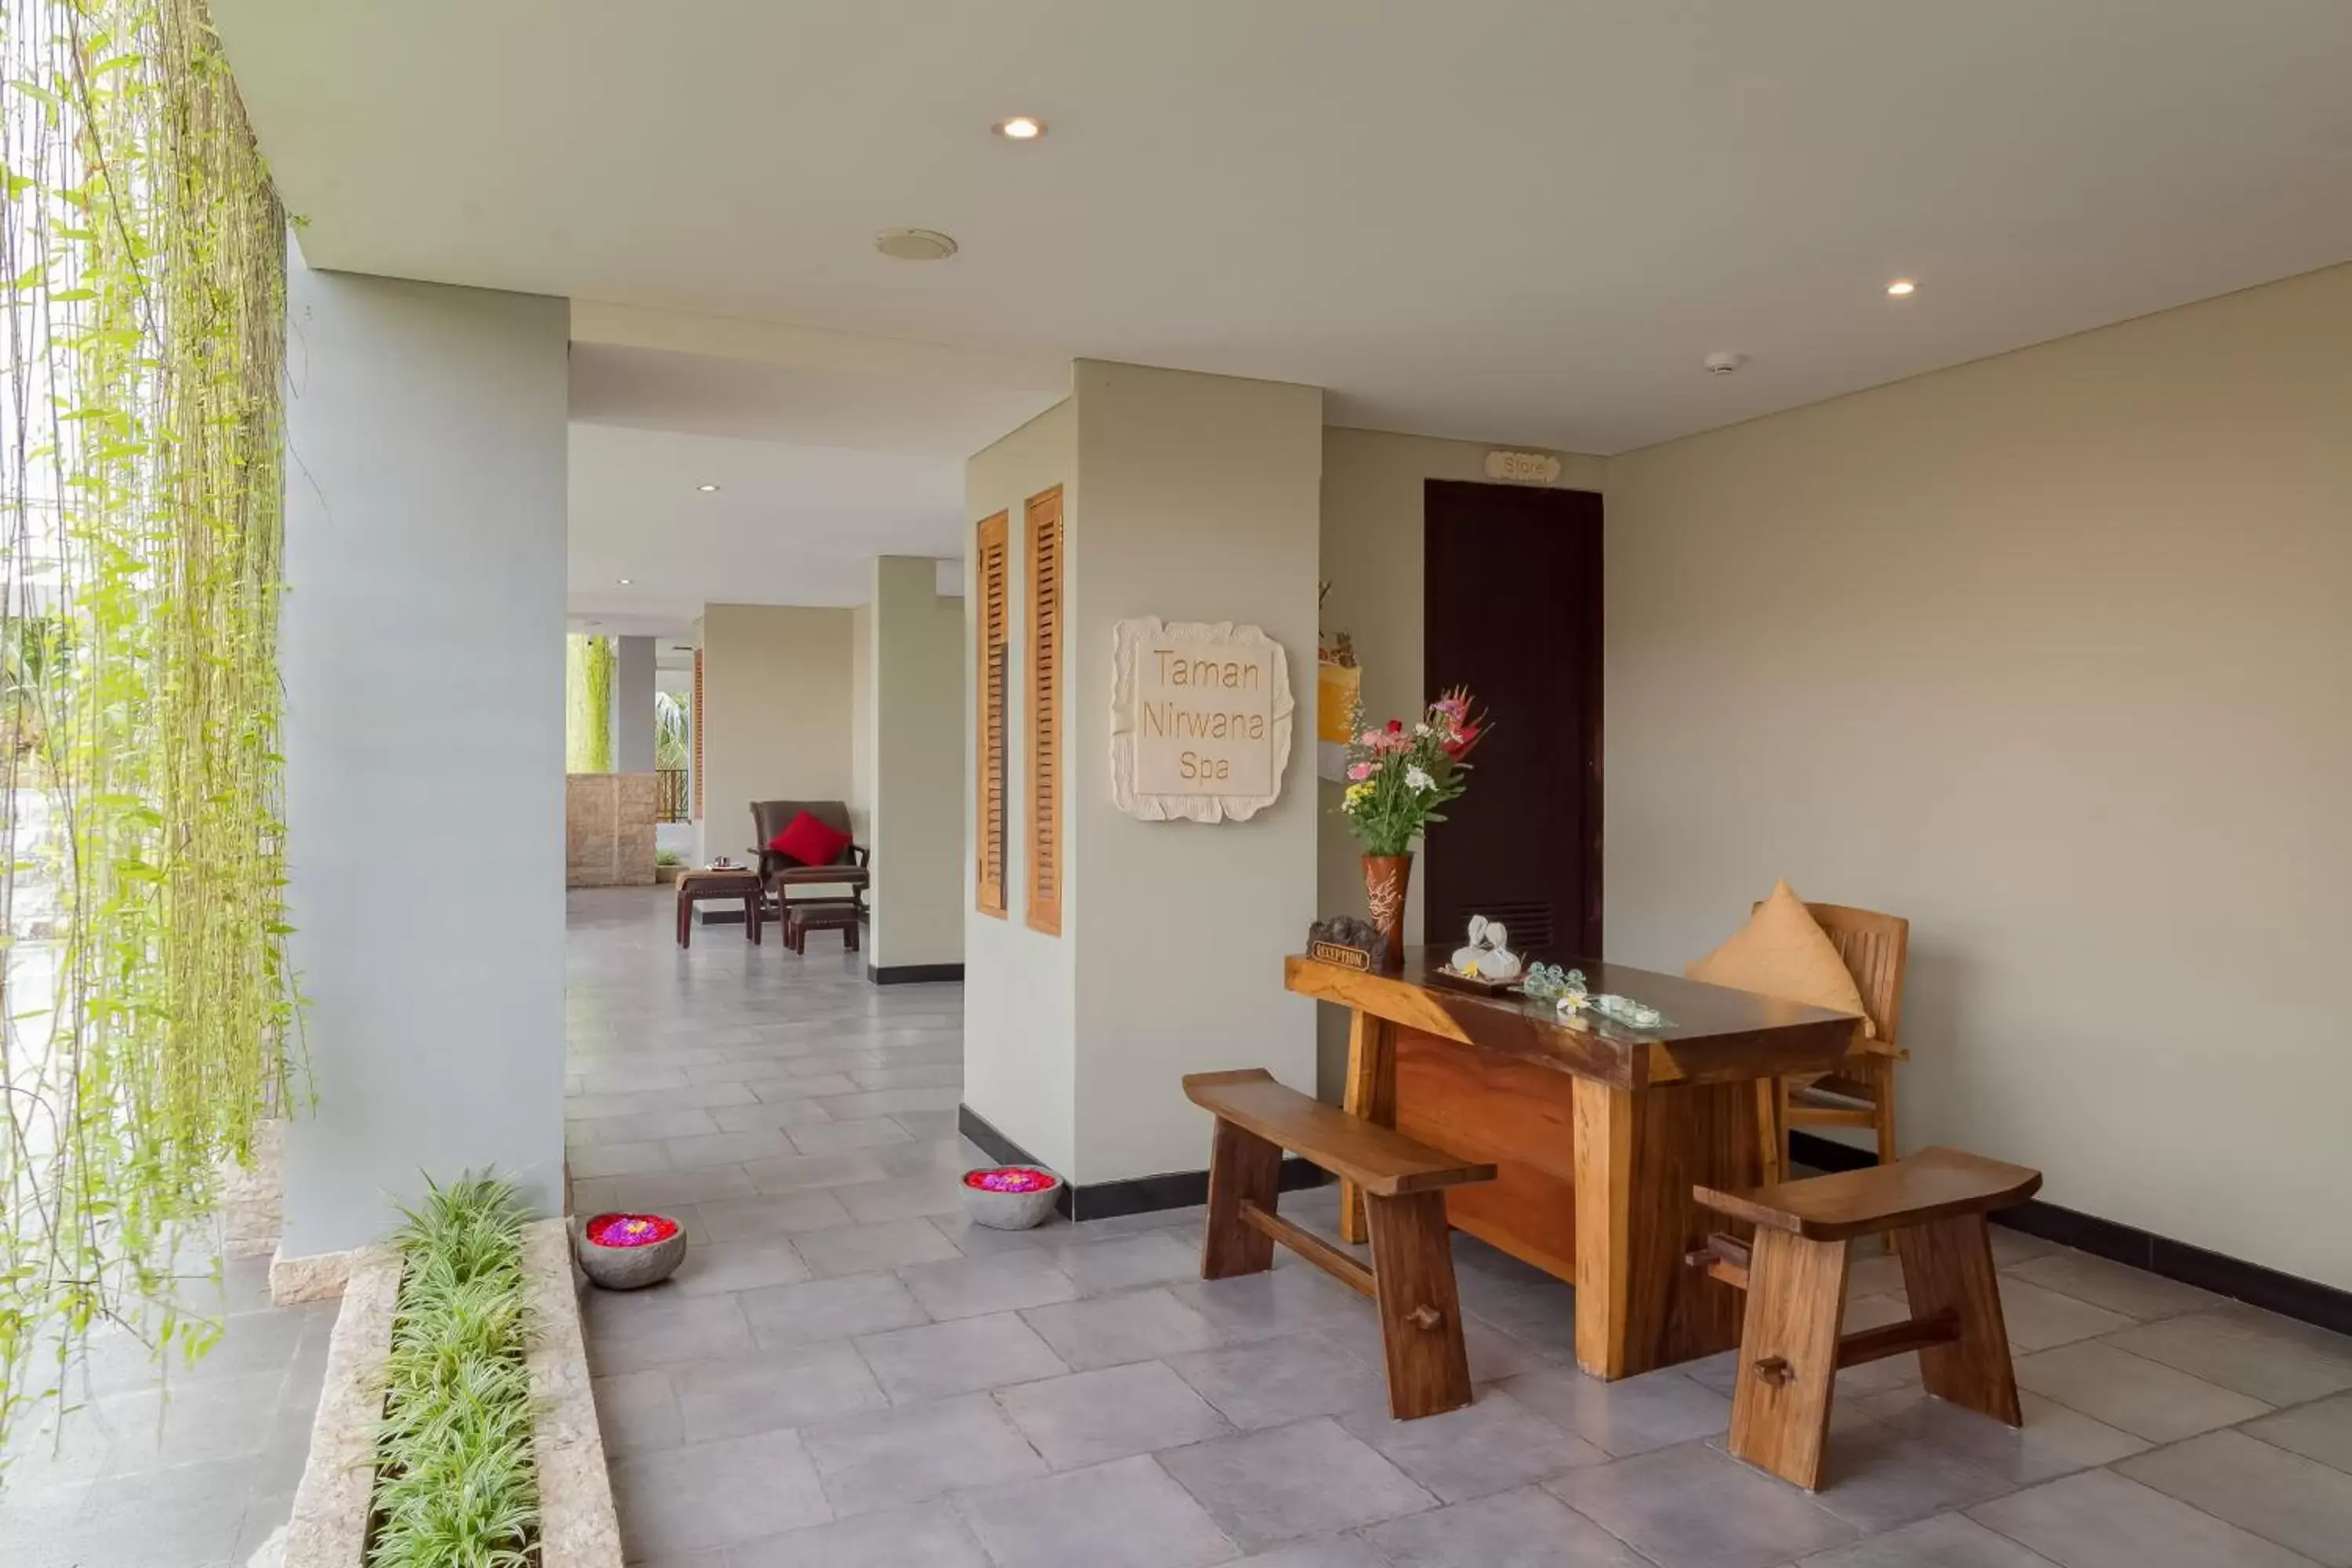 Massage, Dining Area in Best Western Premier Agung Resort Ubud